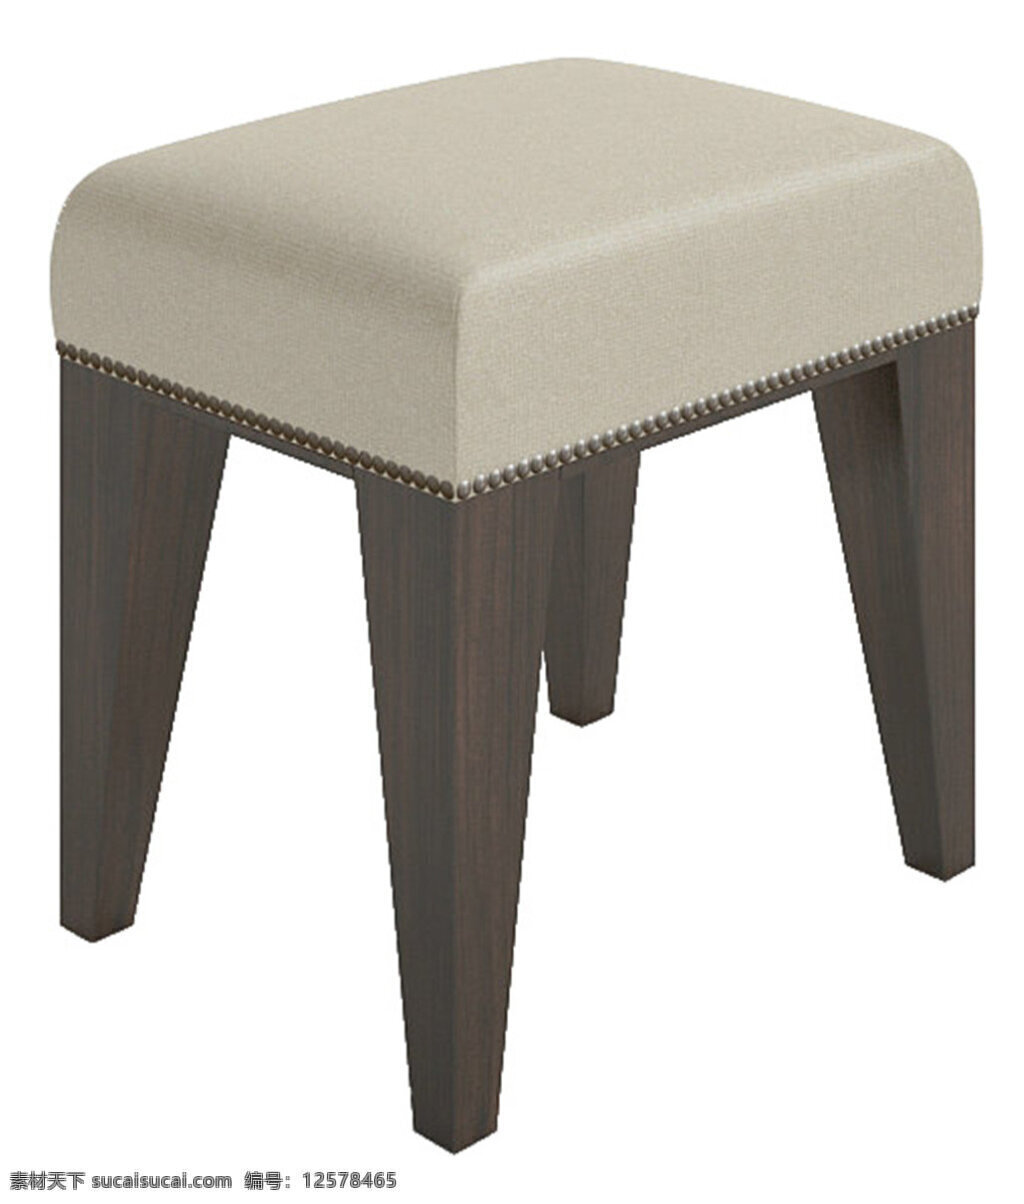 max 模型 模板下载 件 高品质 沙发 素材图片 3d设计模型 源文 白色